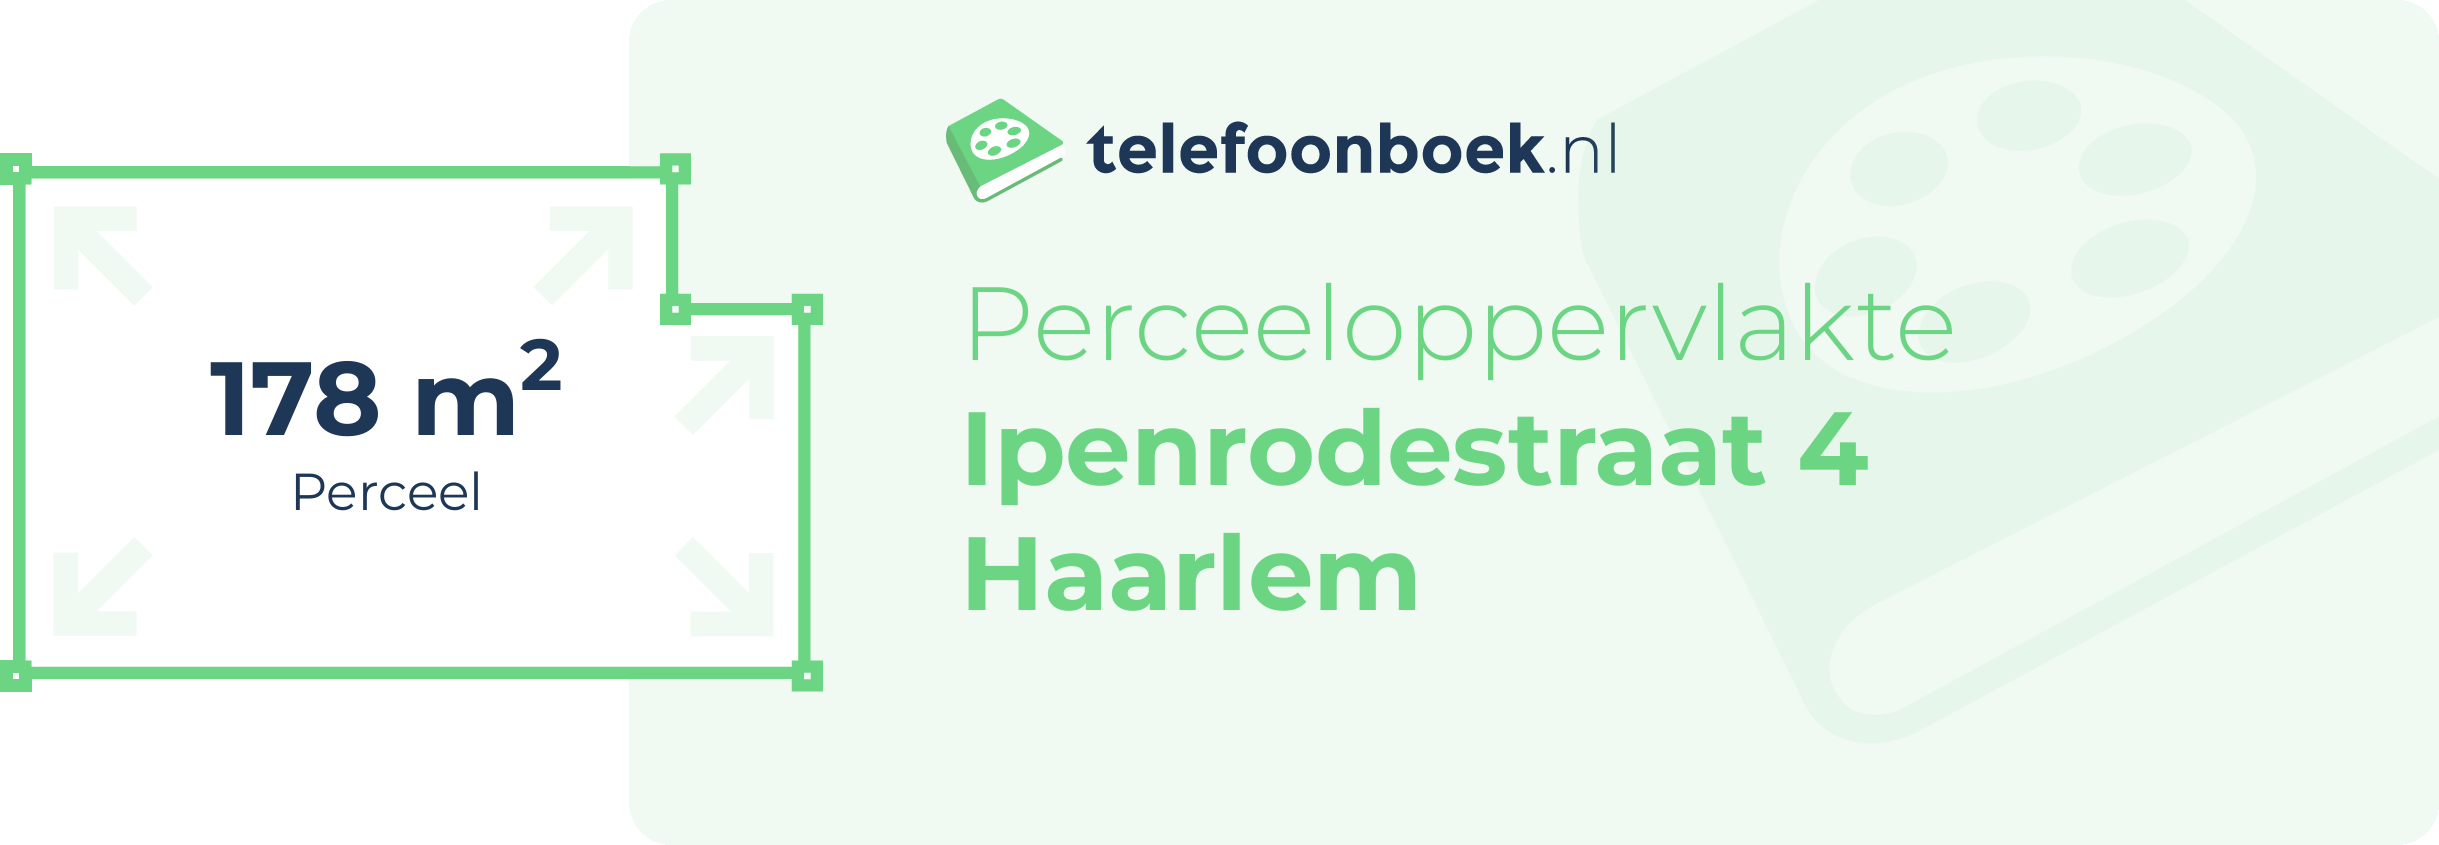 Perceeloppervlakte Ipenrodestraat 4 Haarlem